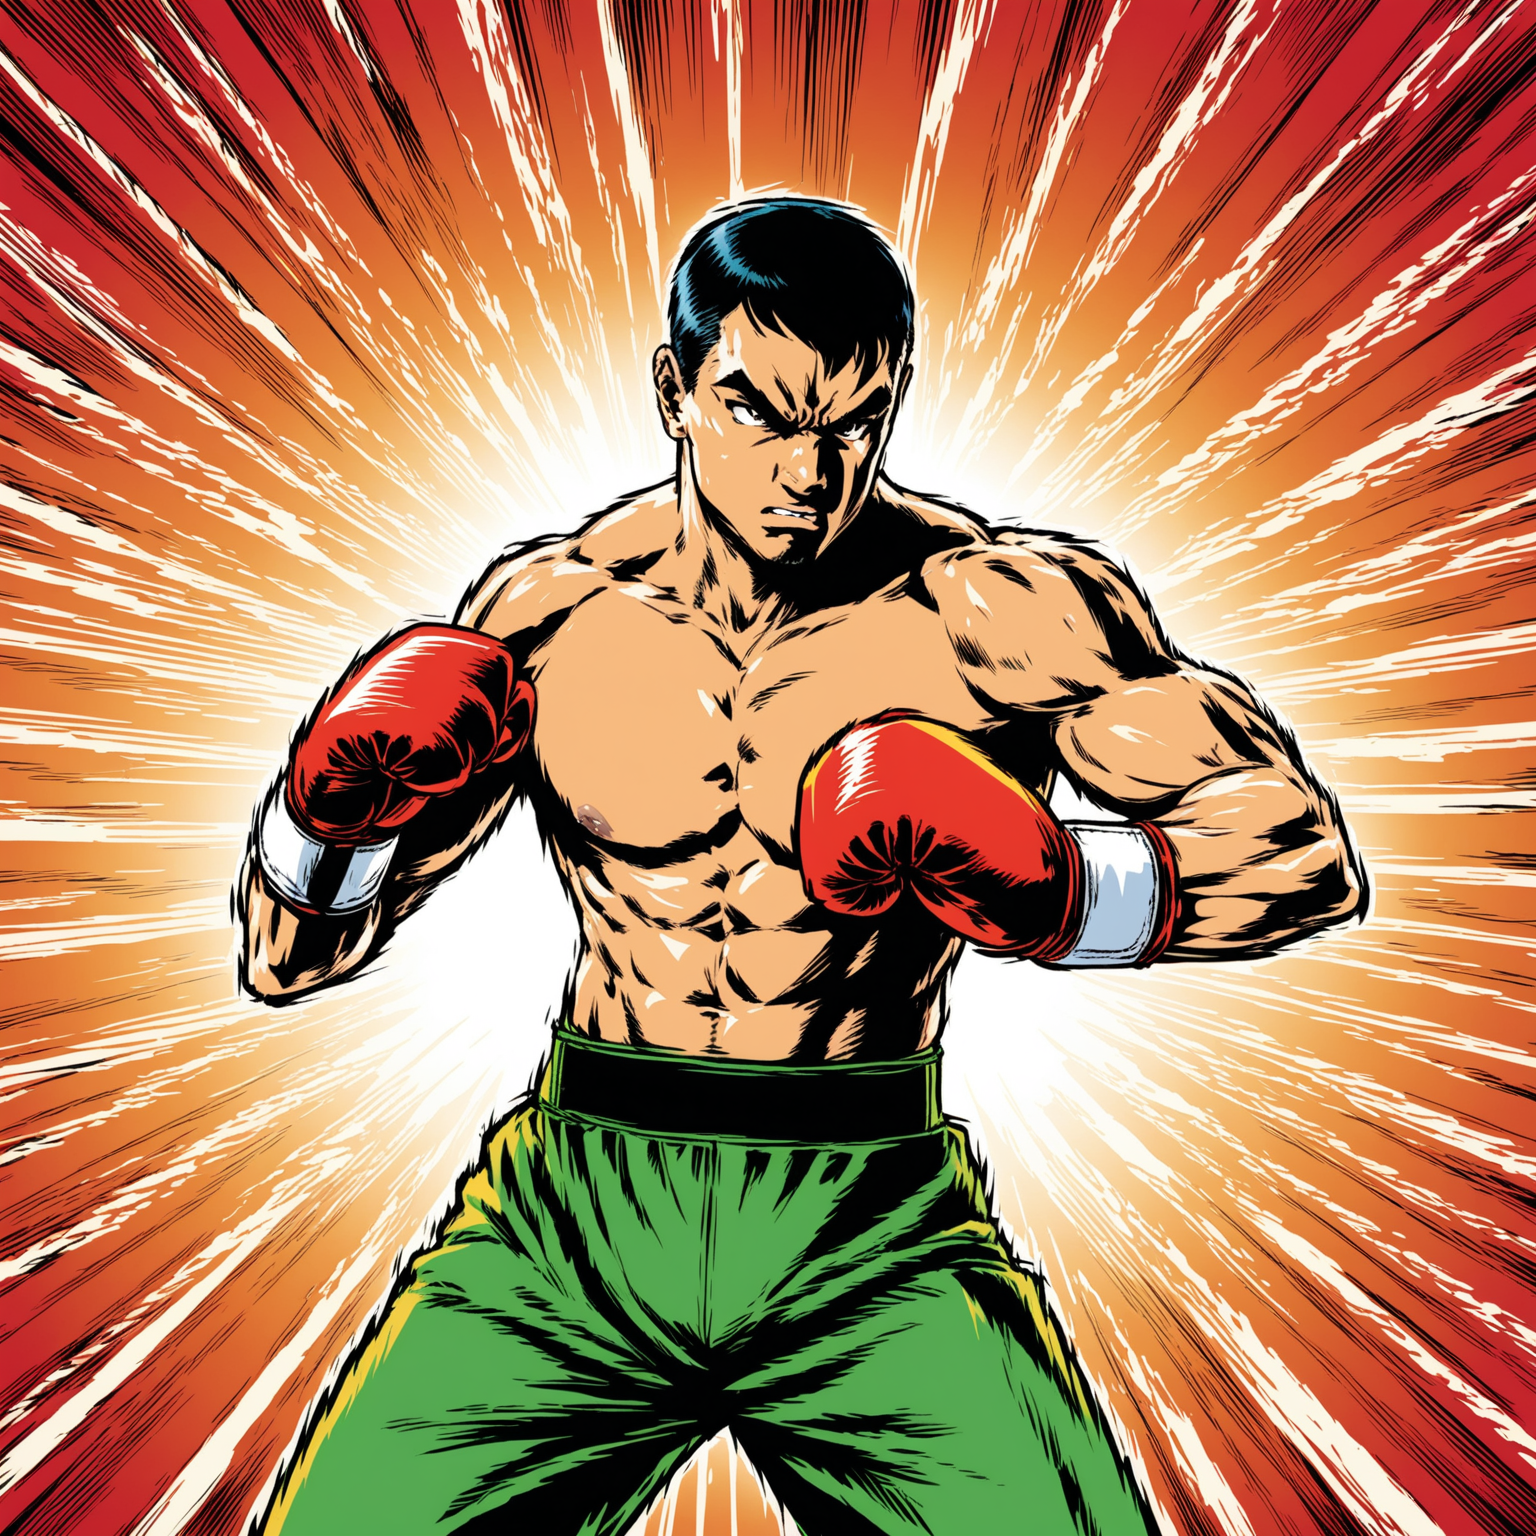 dans un style bande dessinée : 
un boxeur occuppé de faire du shadow boxing